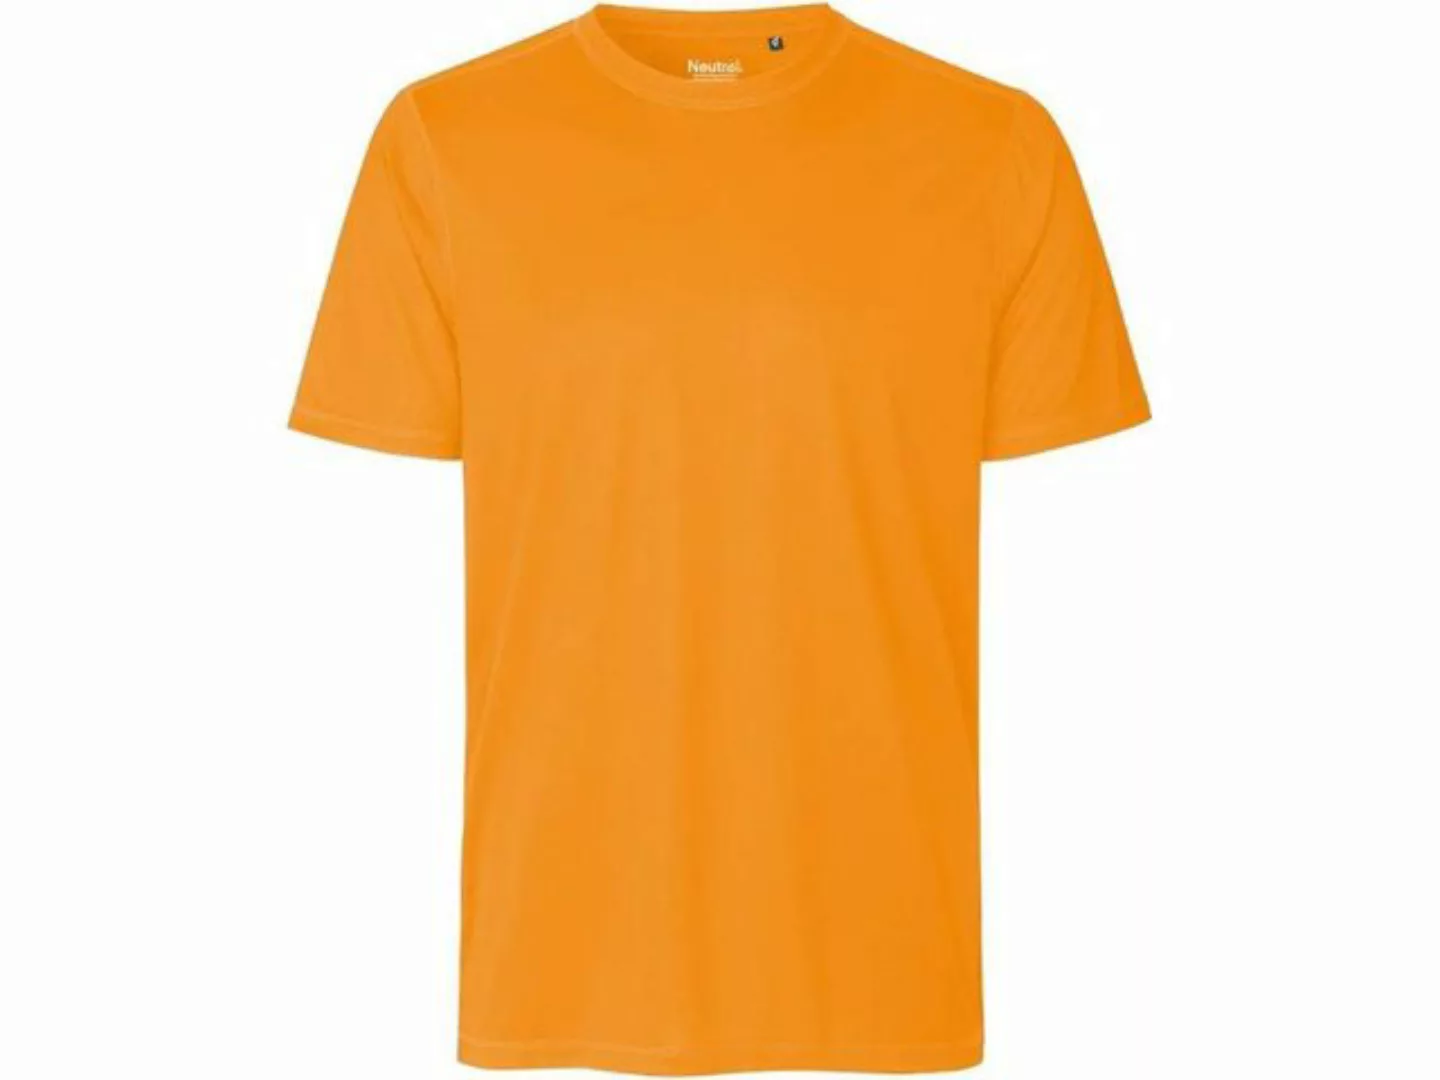 Neutral T-Shirt Neutral Herren-Sport-T-Shirt aus recyceltem Polyes günstig online kaufen